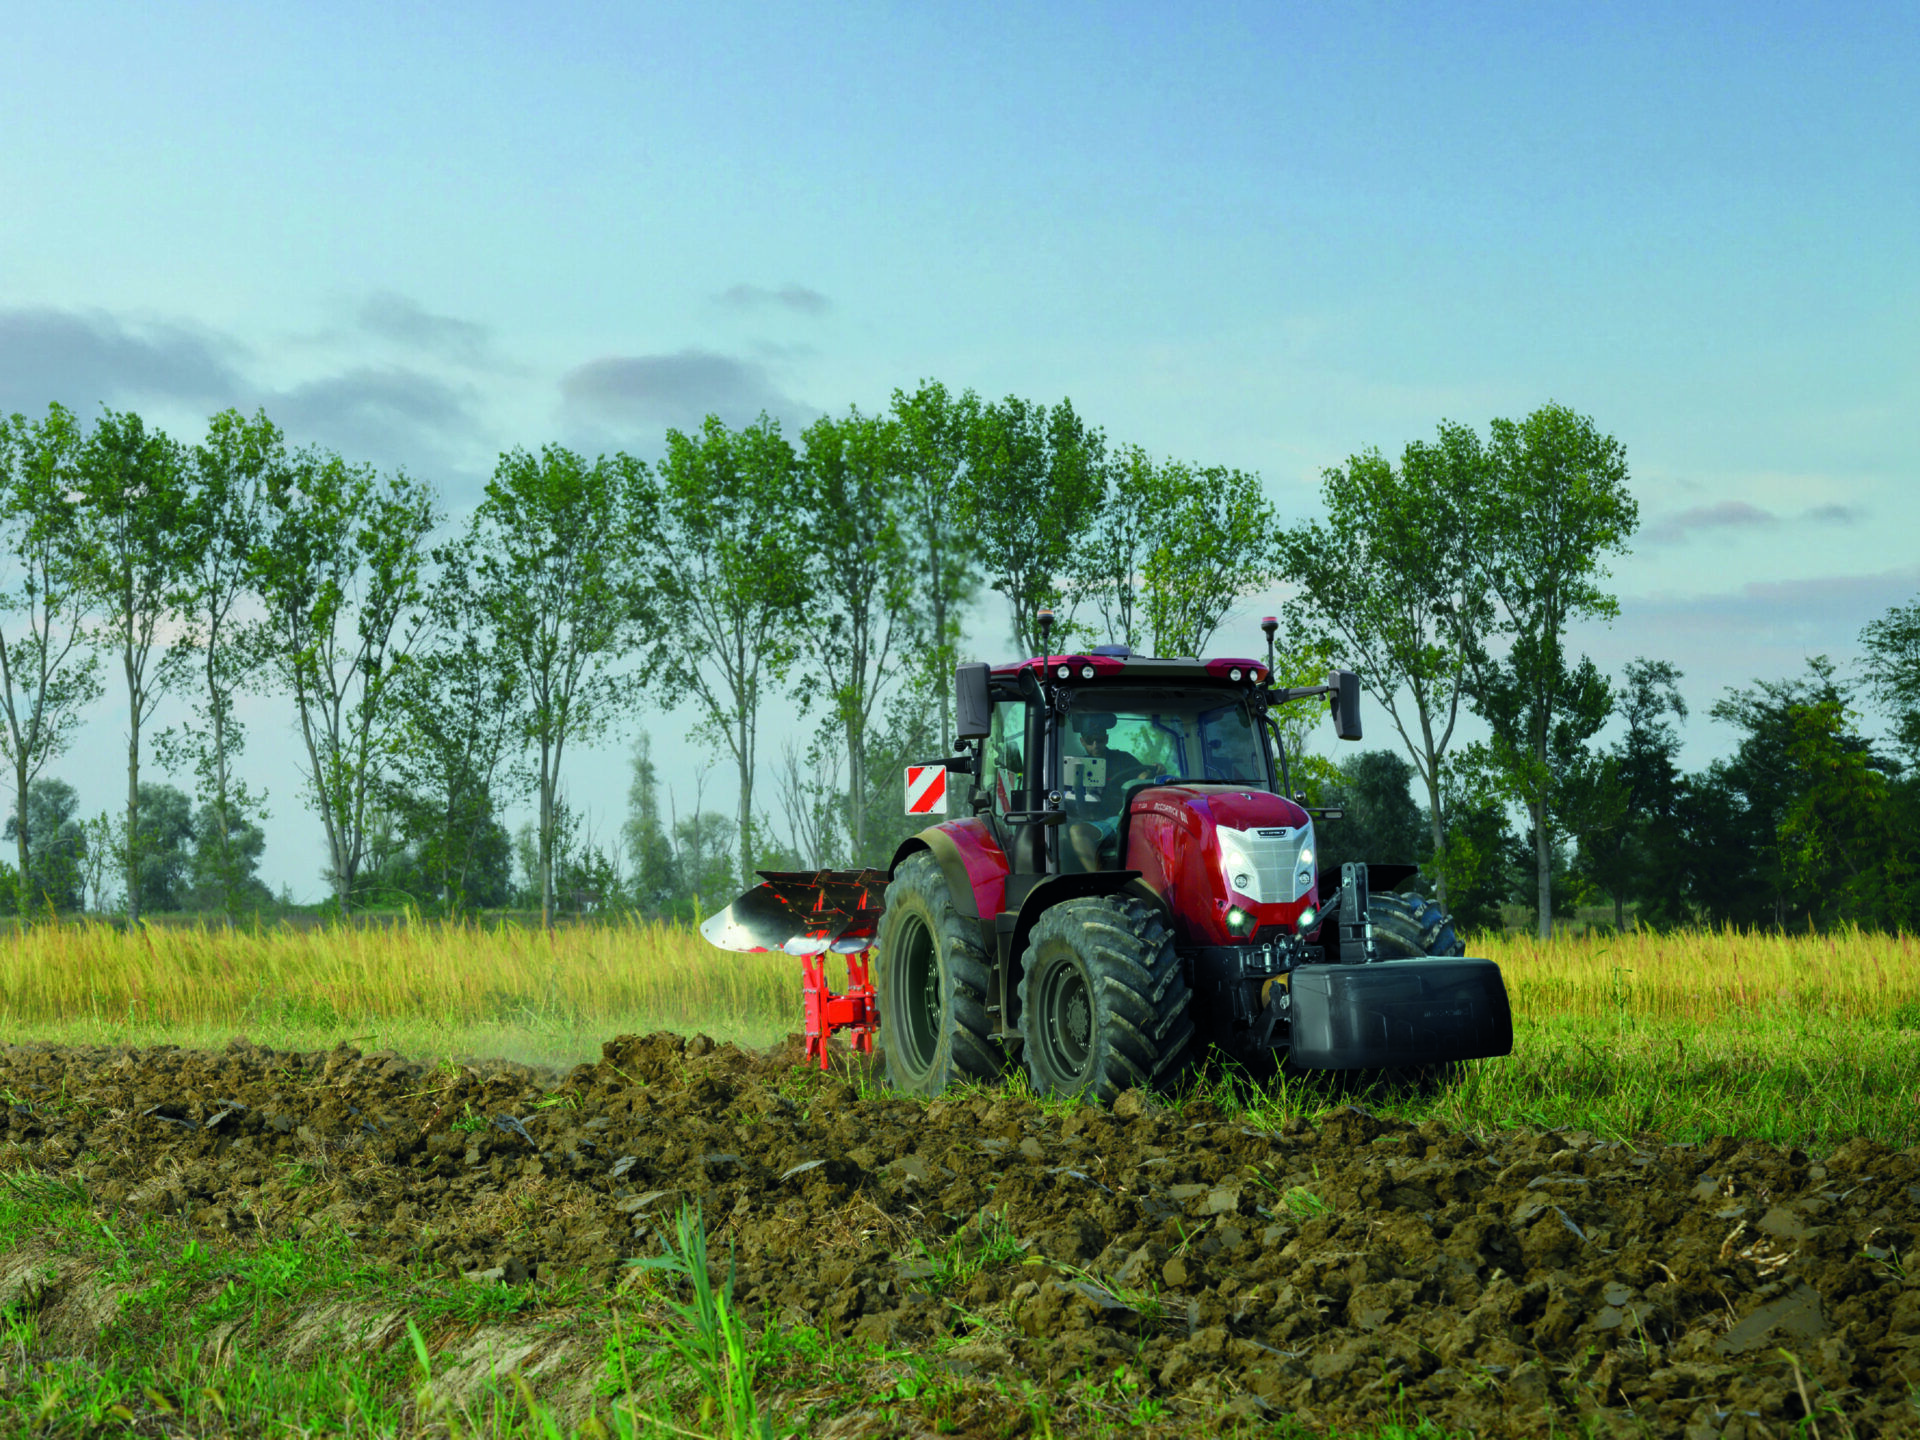  Traktoren Hintergrundbild 1920x1440. McCormick startet die Agritechnica im Zeichen von Komfort, Technologie und digitalen Lösungen